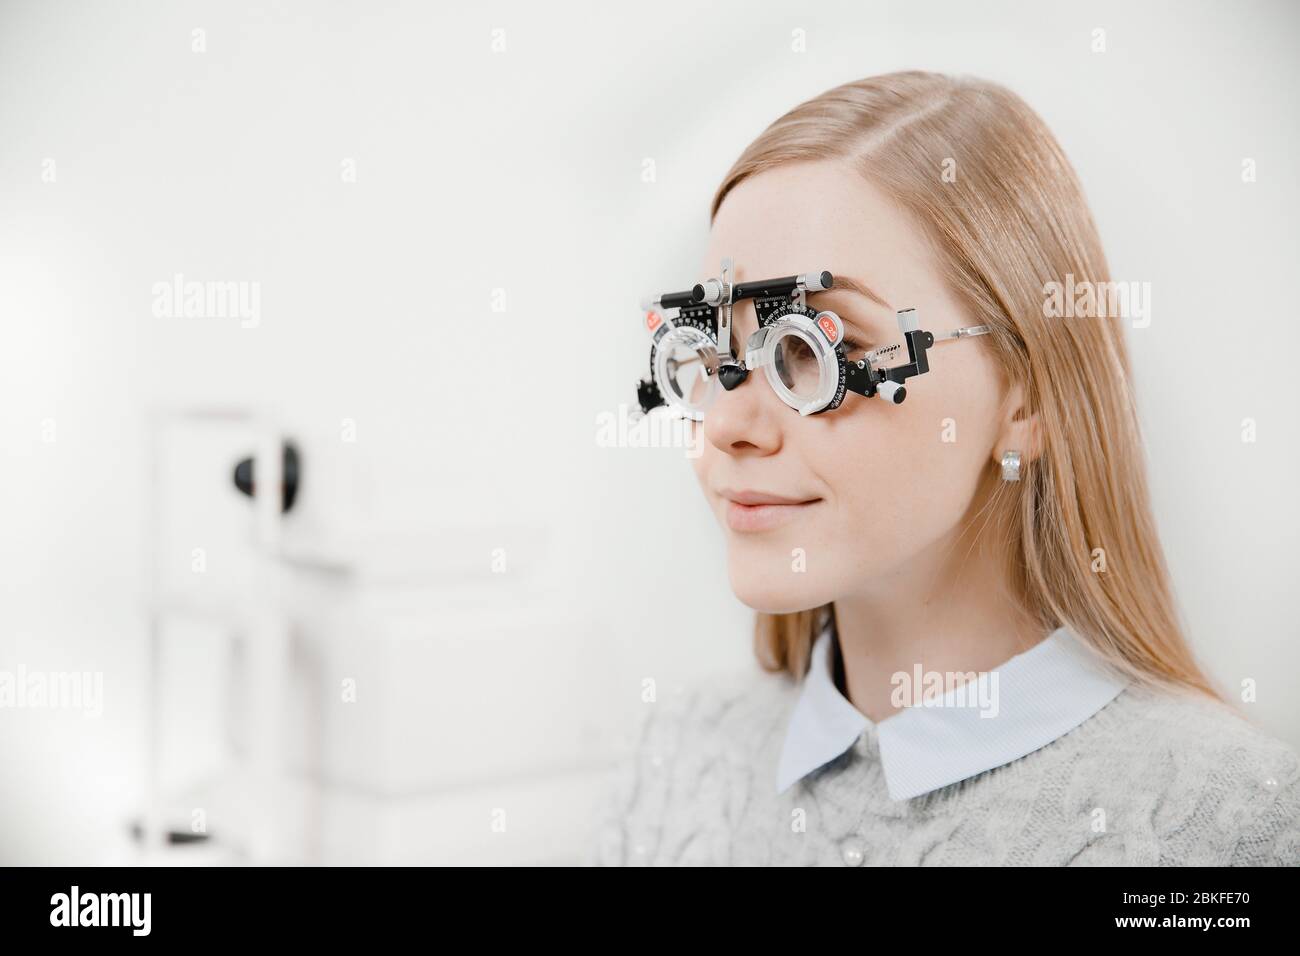 Ritratto di tre quarti bionda bella ragazza giovane con sorriso leggero in occhiali speciali oftalmici per il controllo visivo e la selezione delle lenti Foto Stock